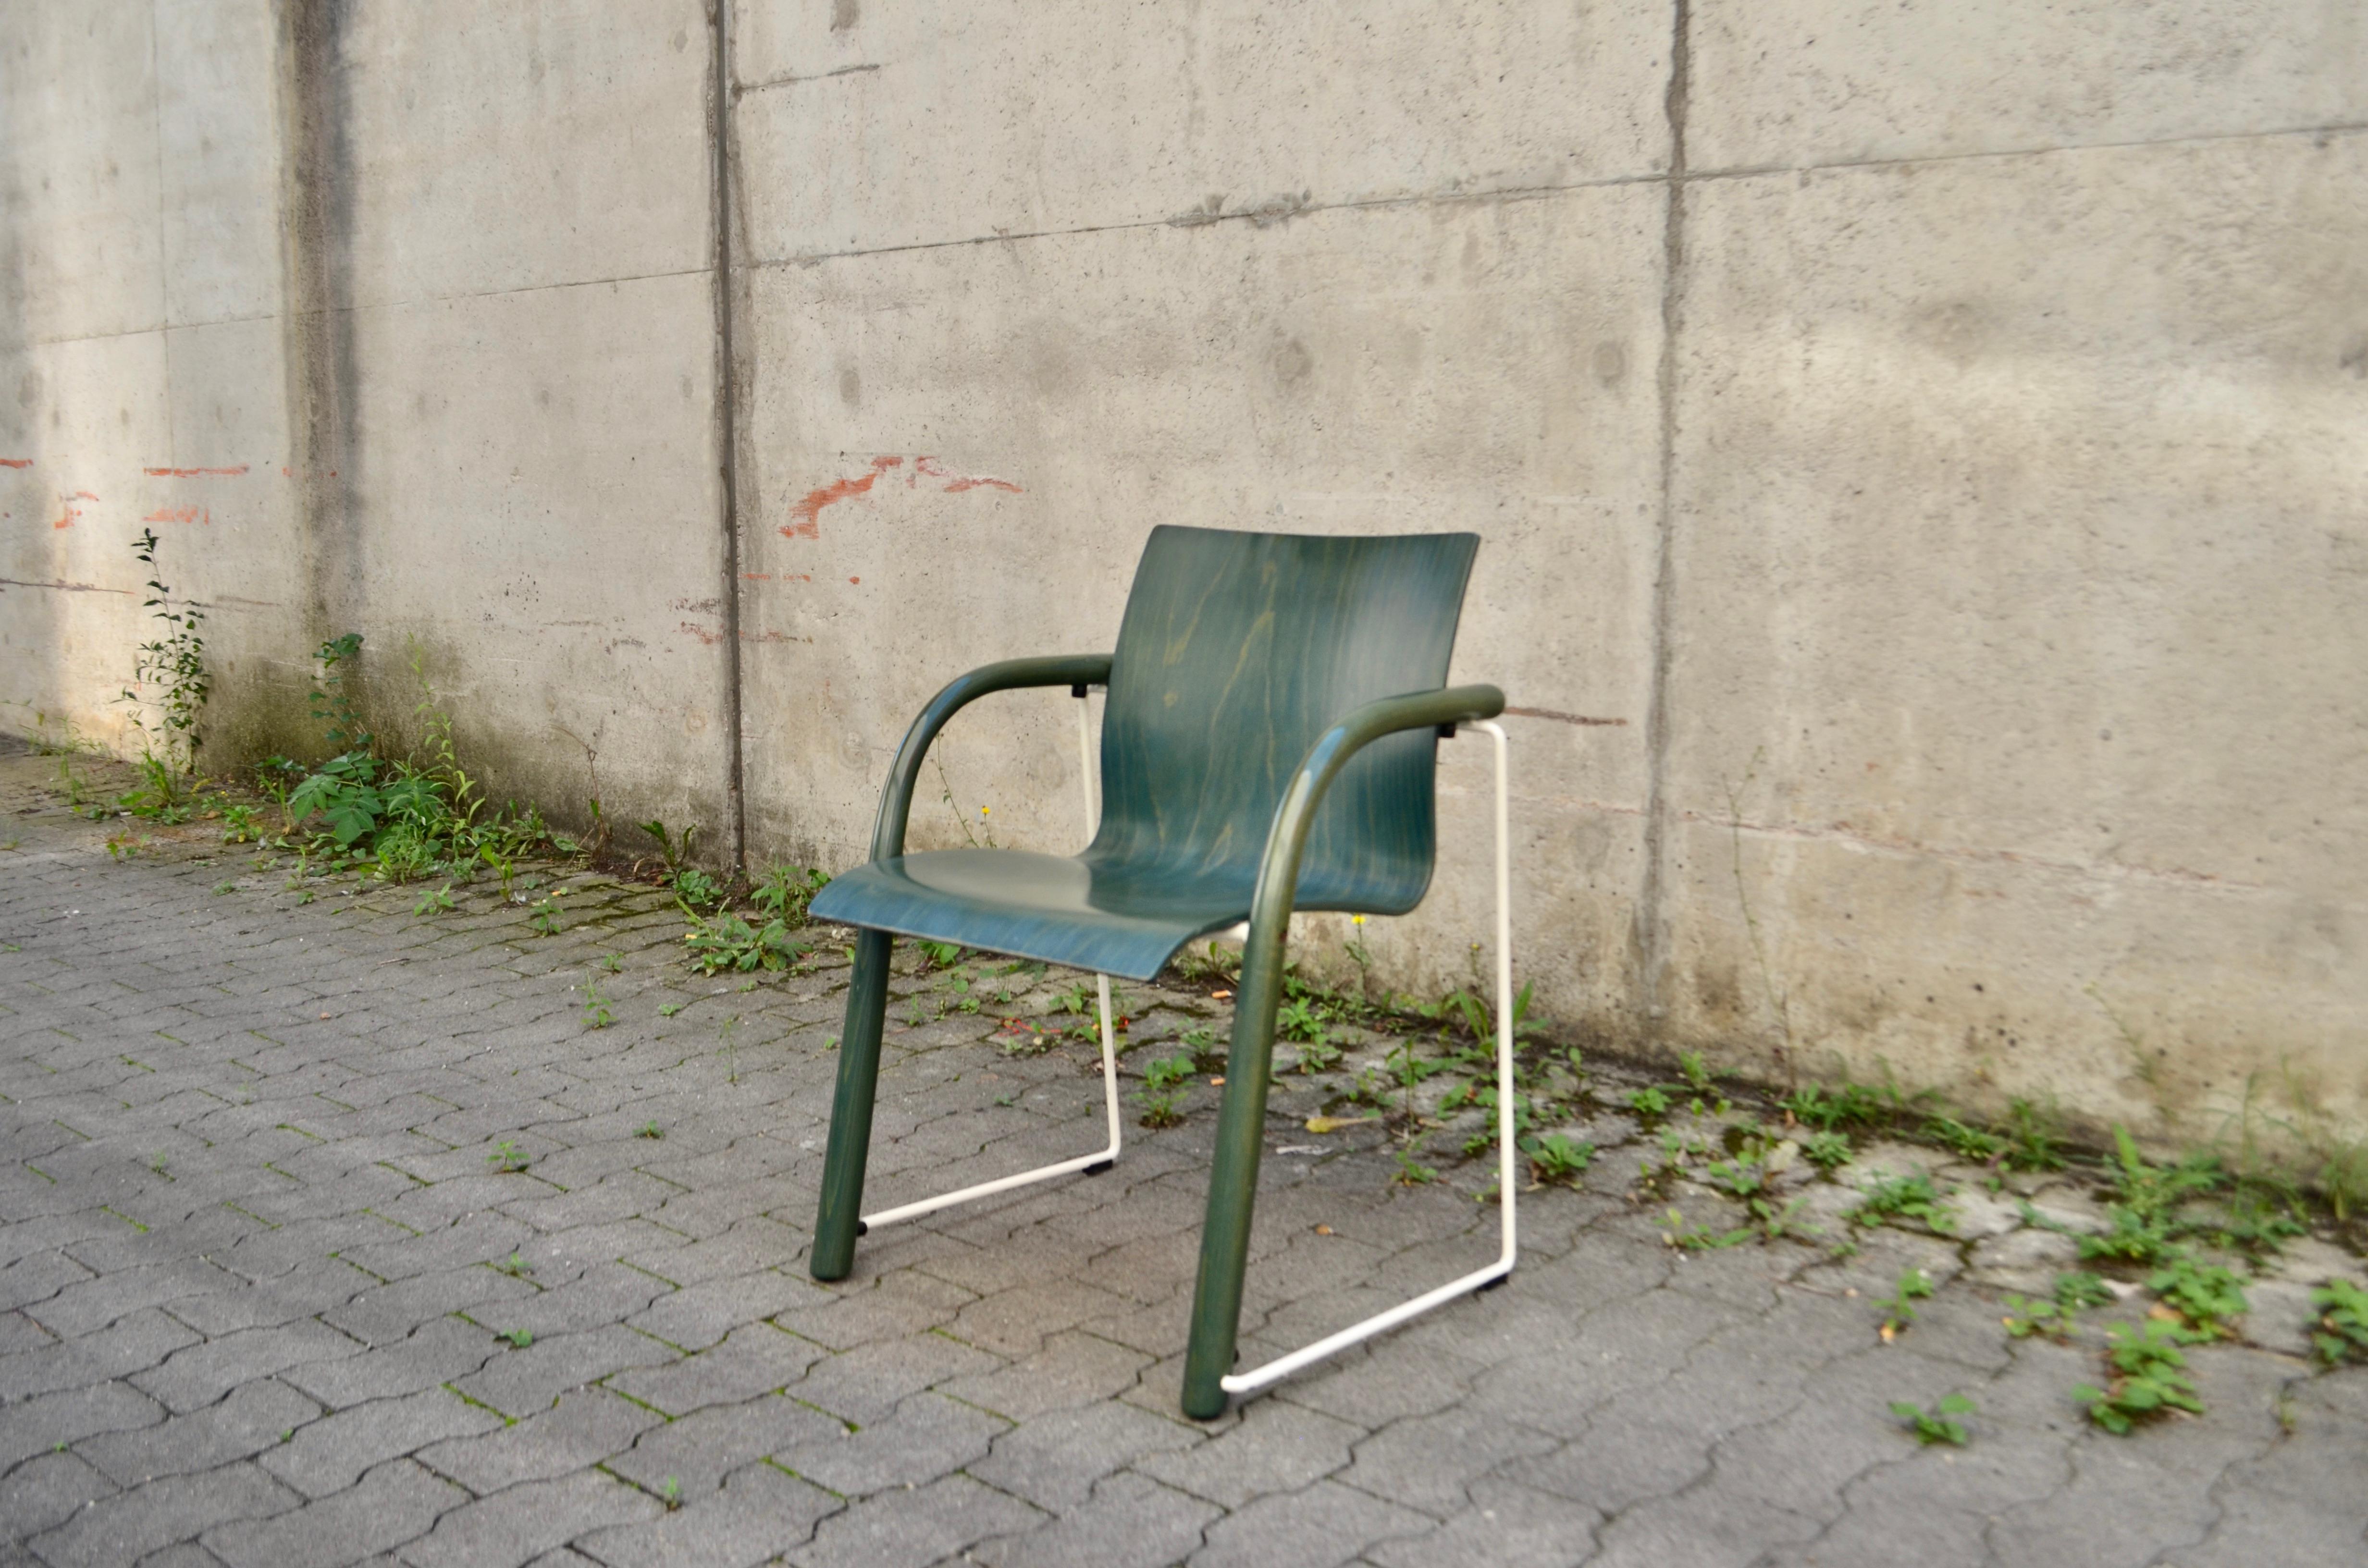 Cette chaise Thonet modèle S320  en version verte.
Couleur rare.
Conçu par Ulrich Boehme et Wulf Schneider.

